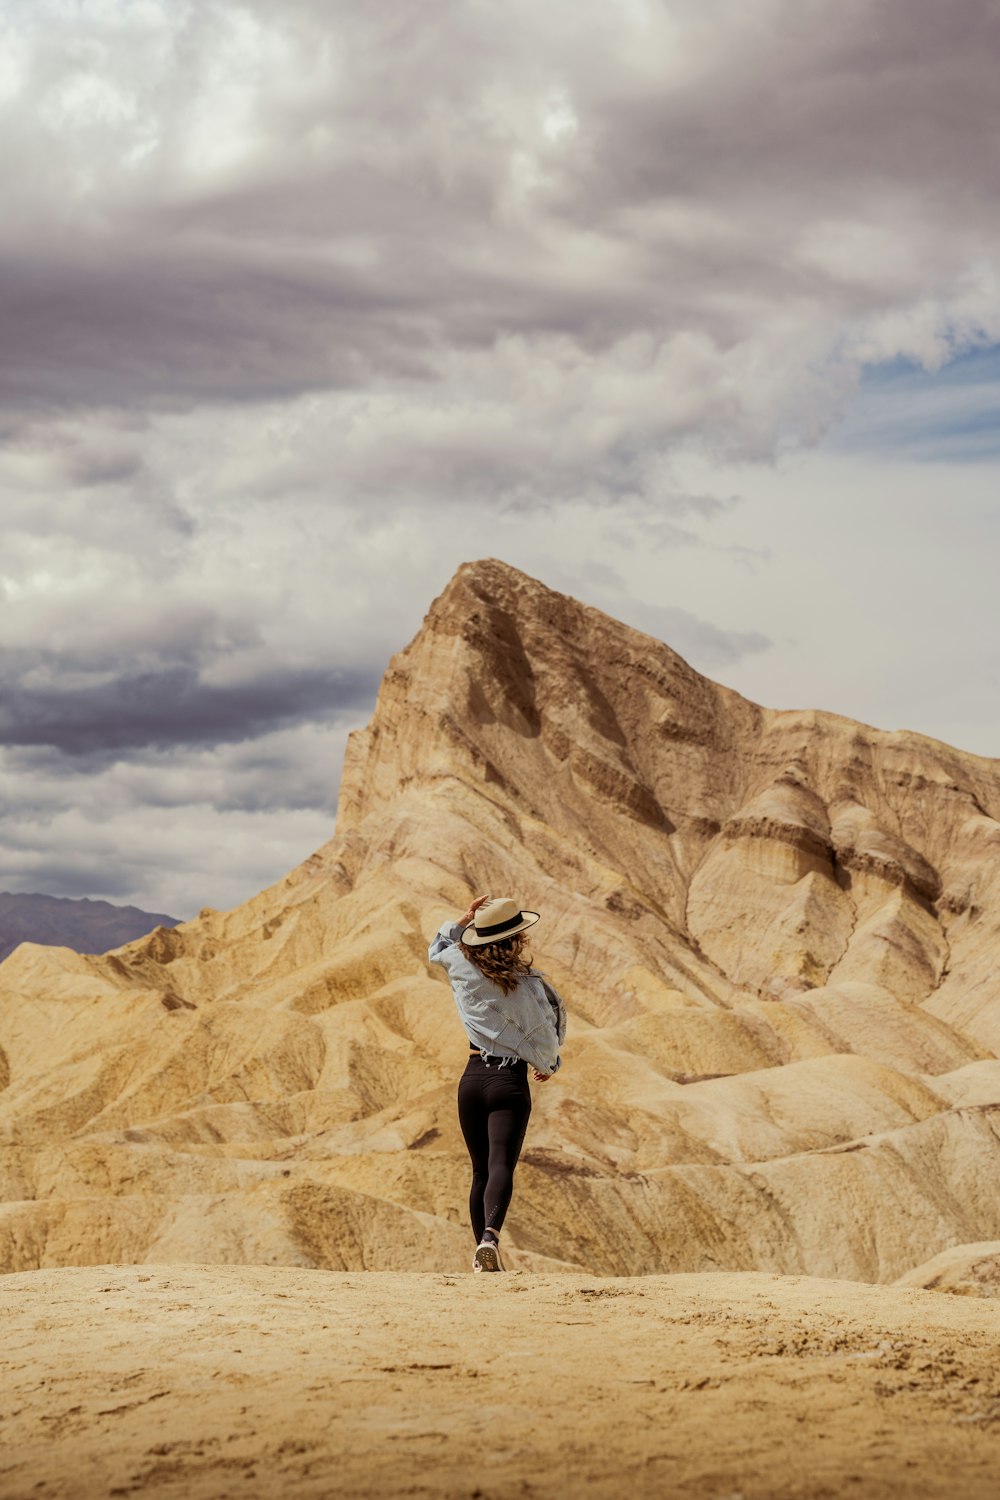 a woman in a hat is walking in the desert